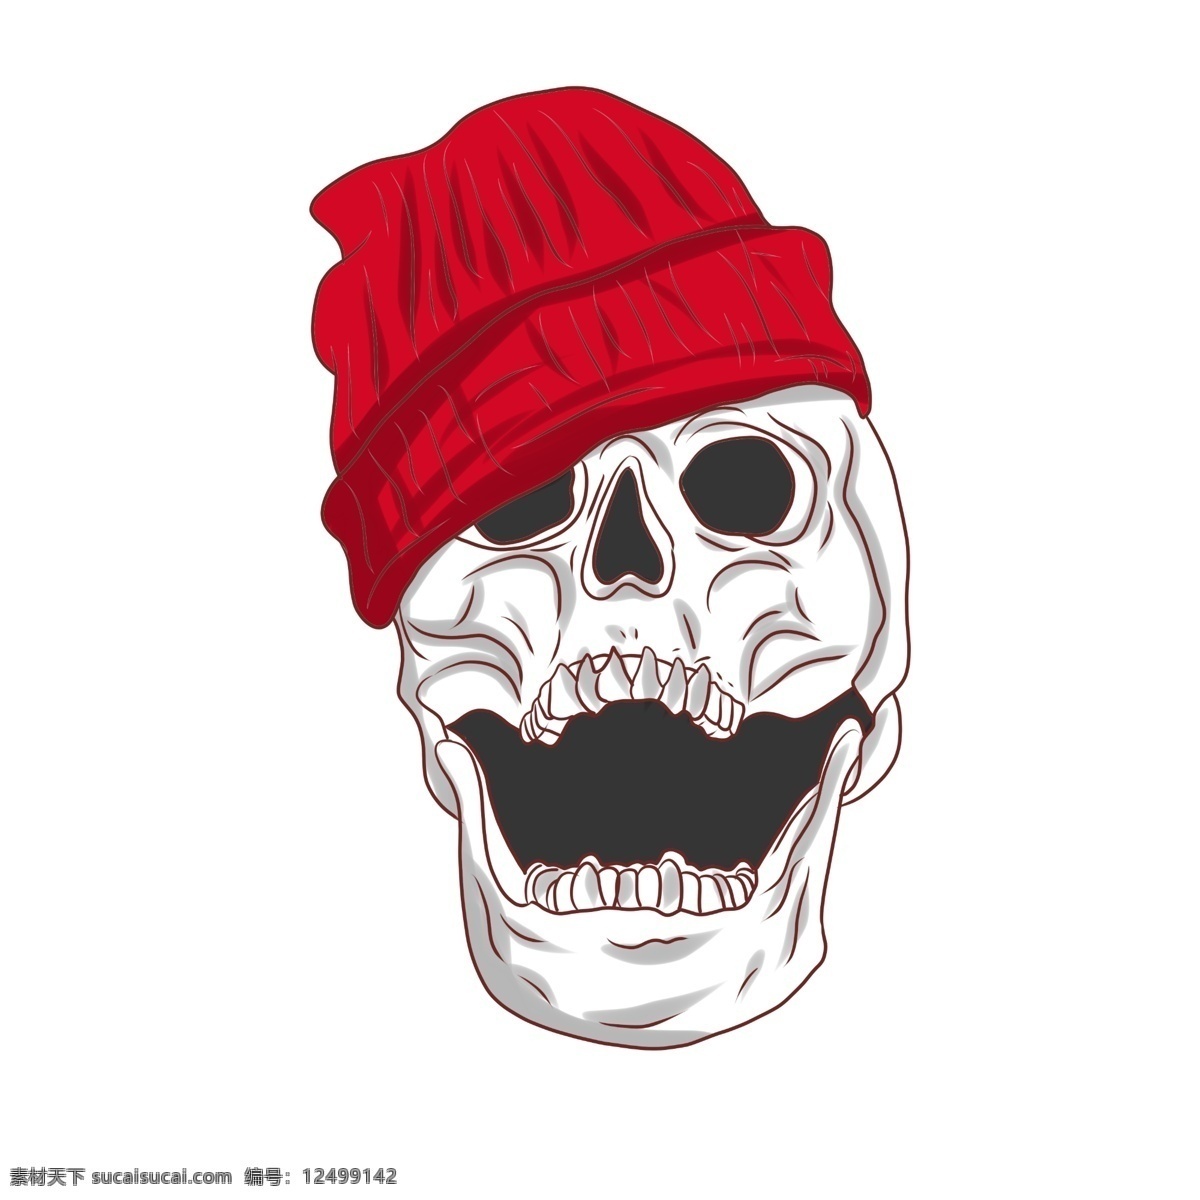 戴 红色 帽子 骷髅 头戴红色帽子 骷髅插画 精美的骷髅 红色帽子 大笑的骷髅 卡通骷髅插画